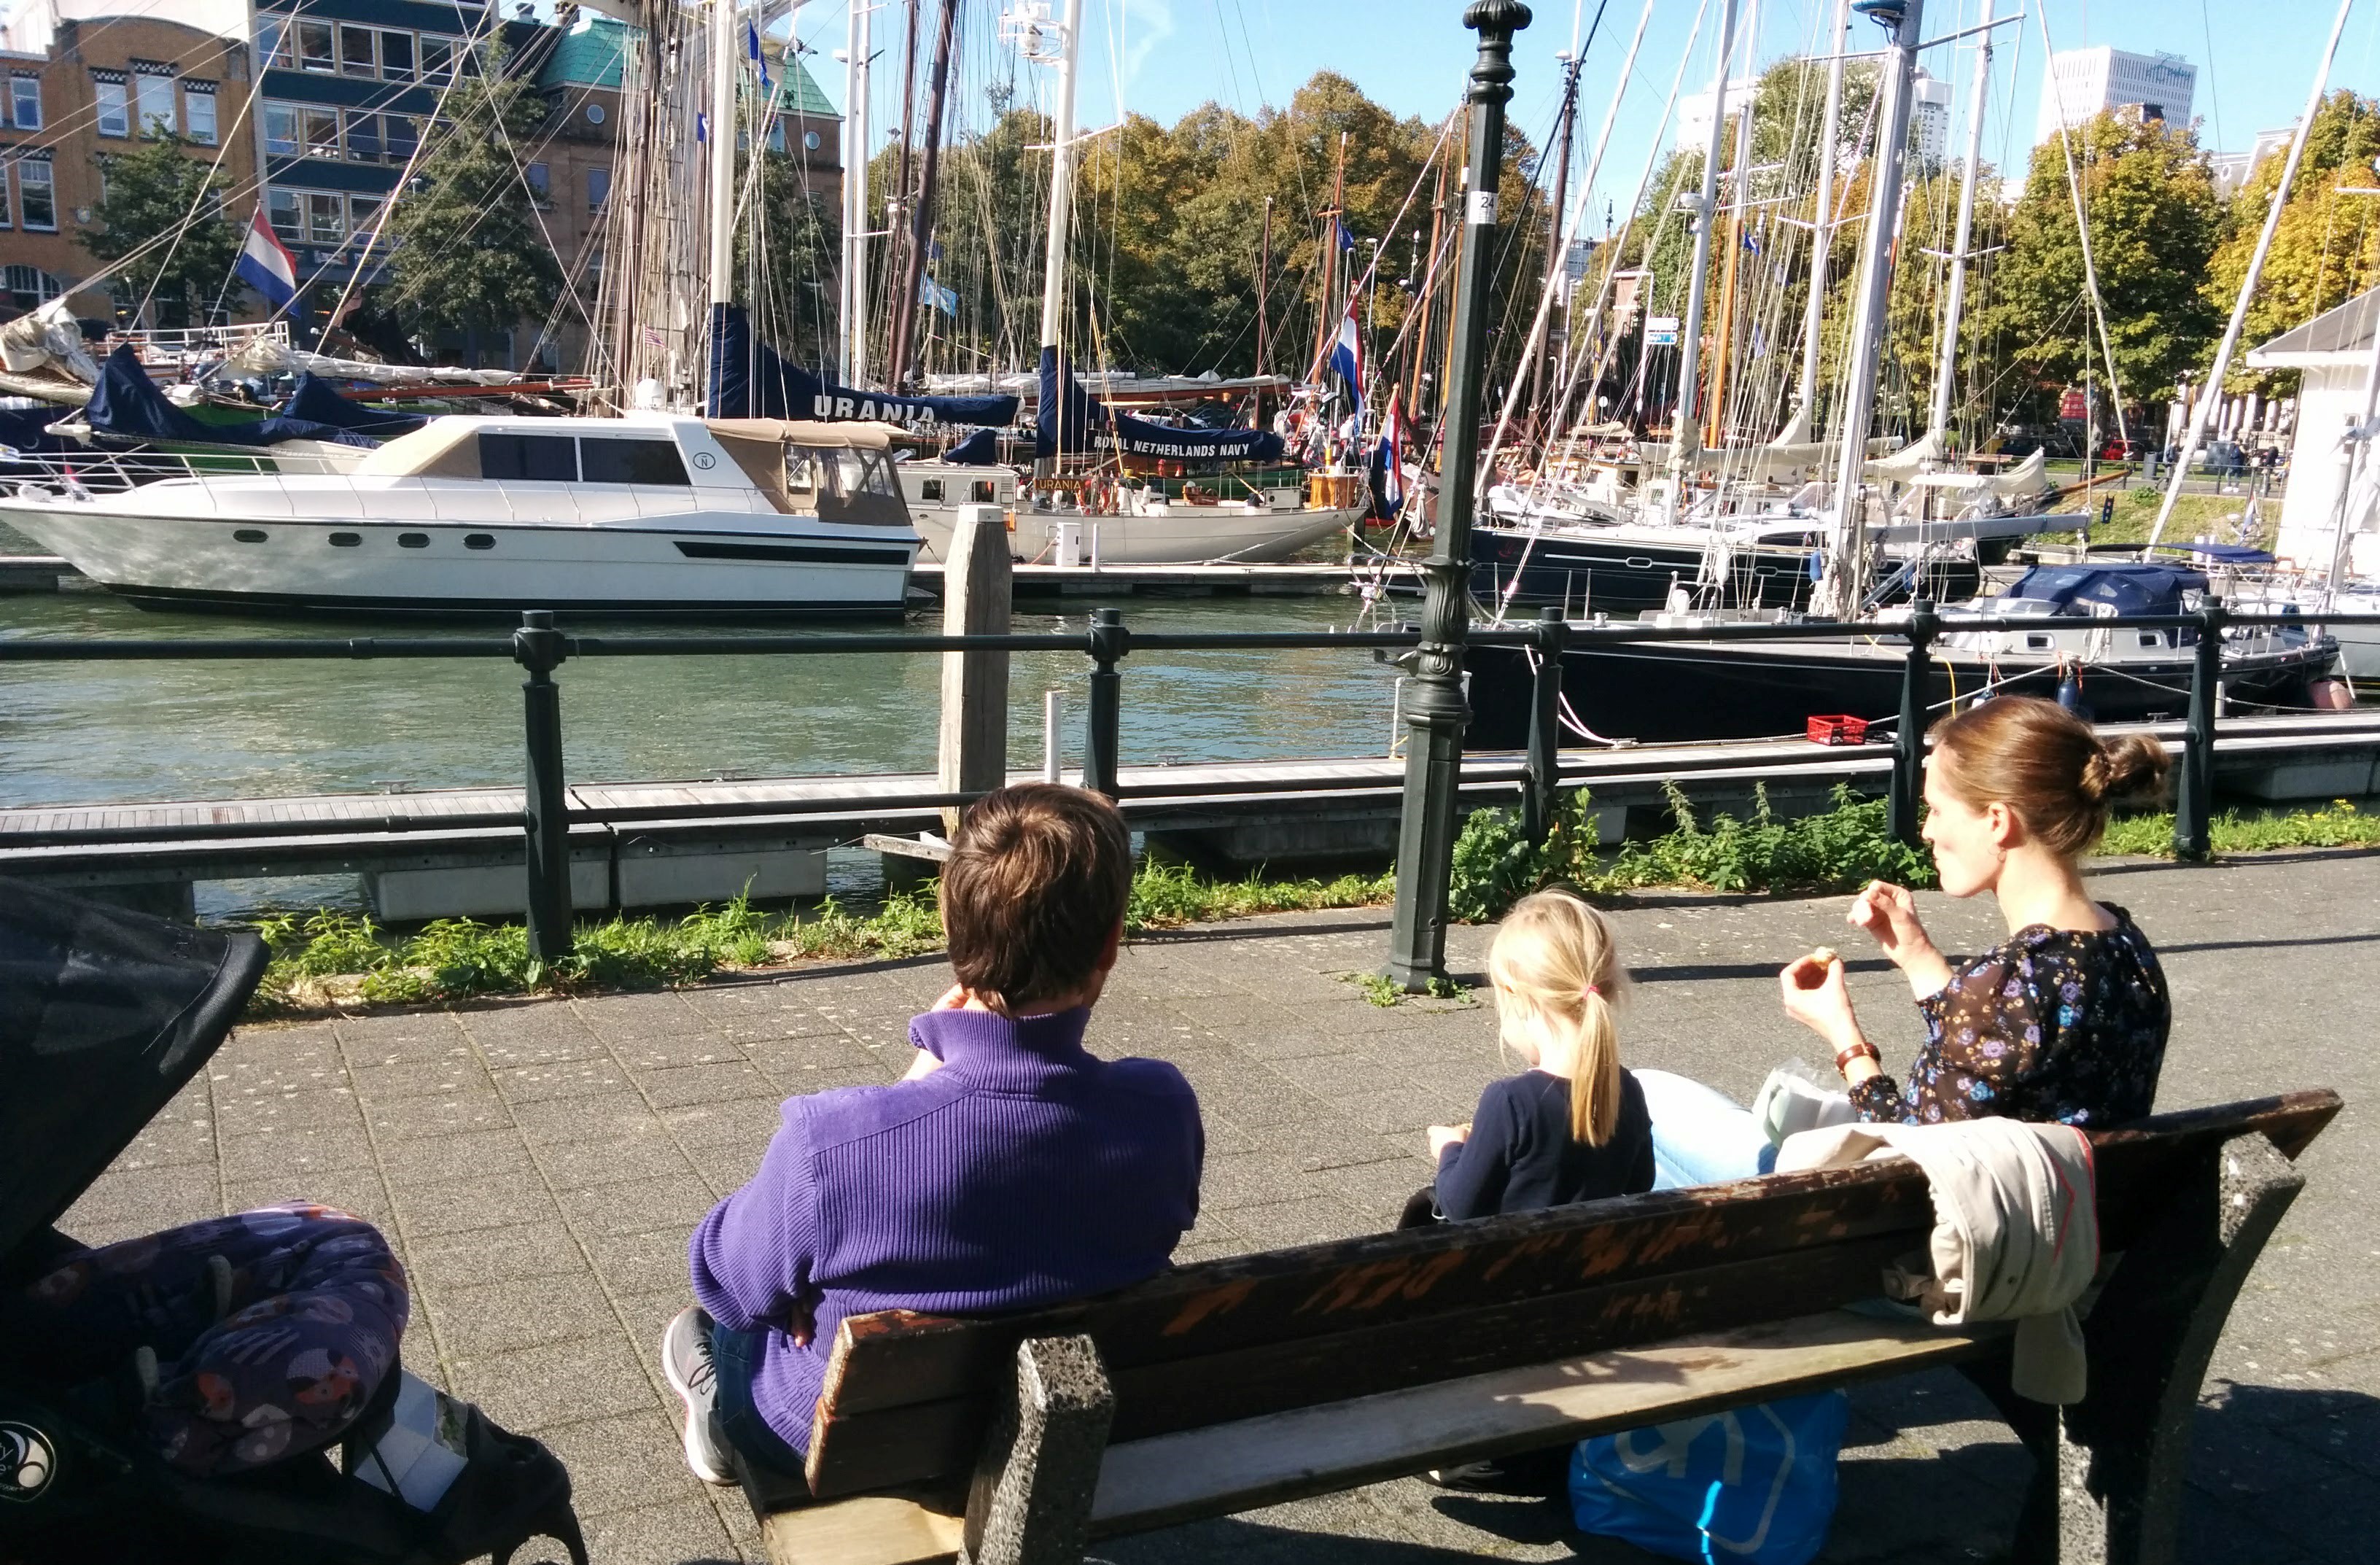 Den impulskøbte frokost blev nydt på havn i solskin i Rotterdam